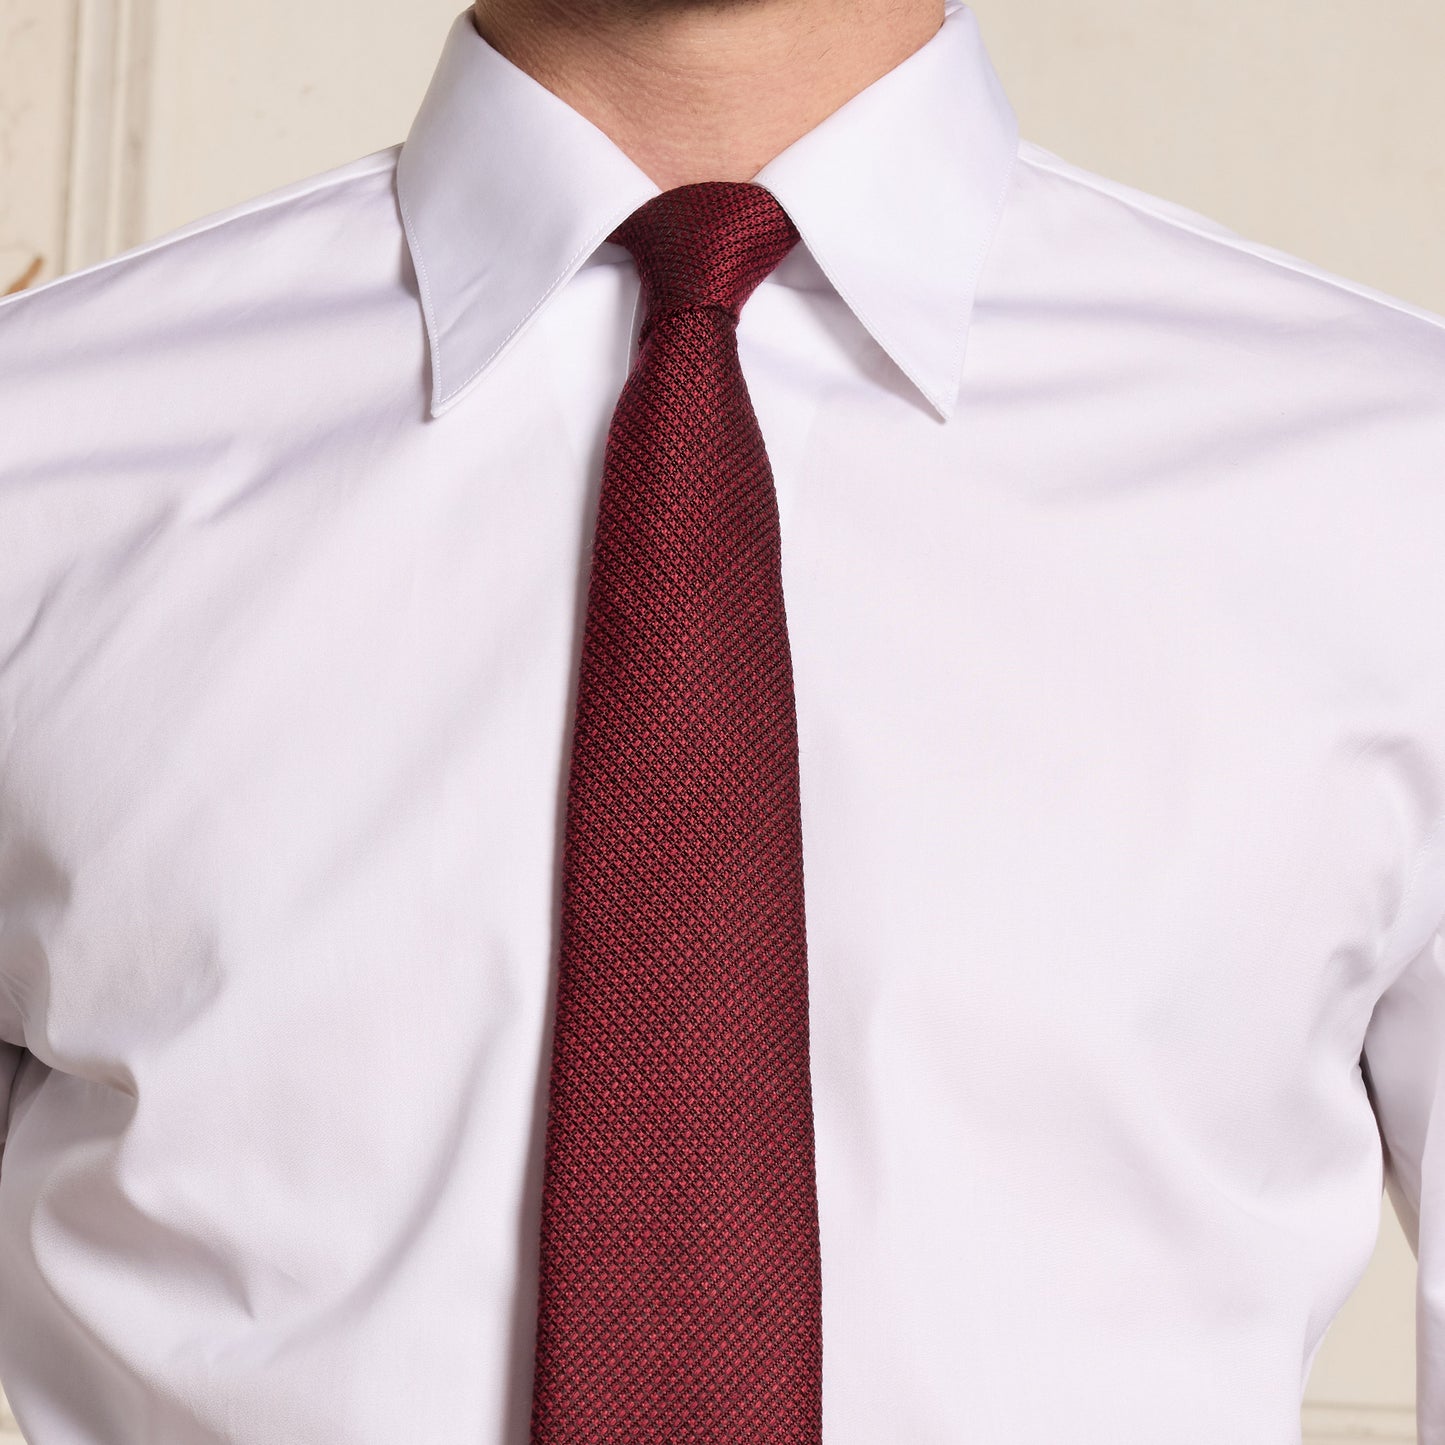 Cravate tissée bordeaux